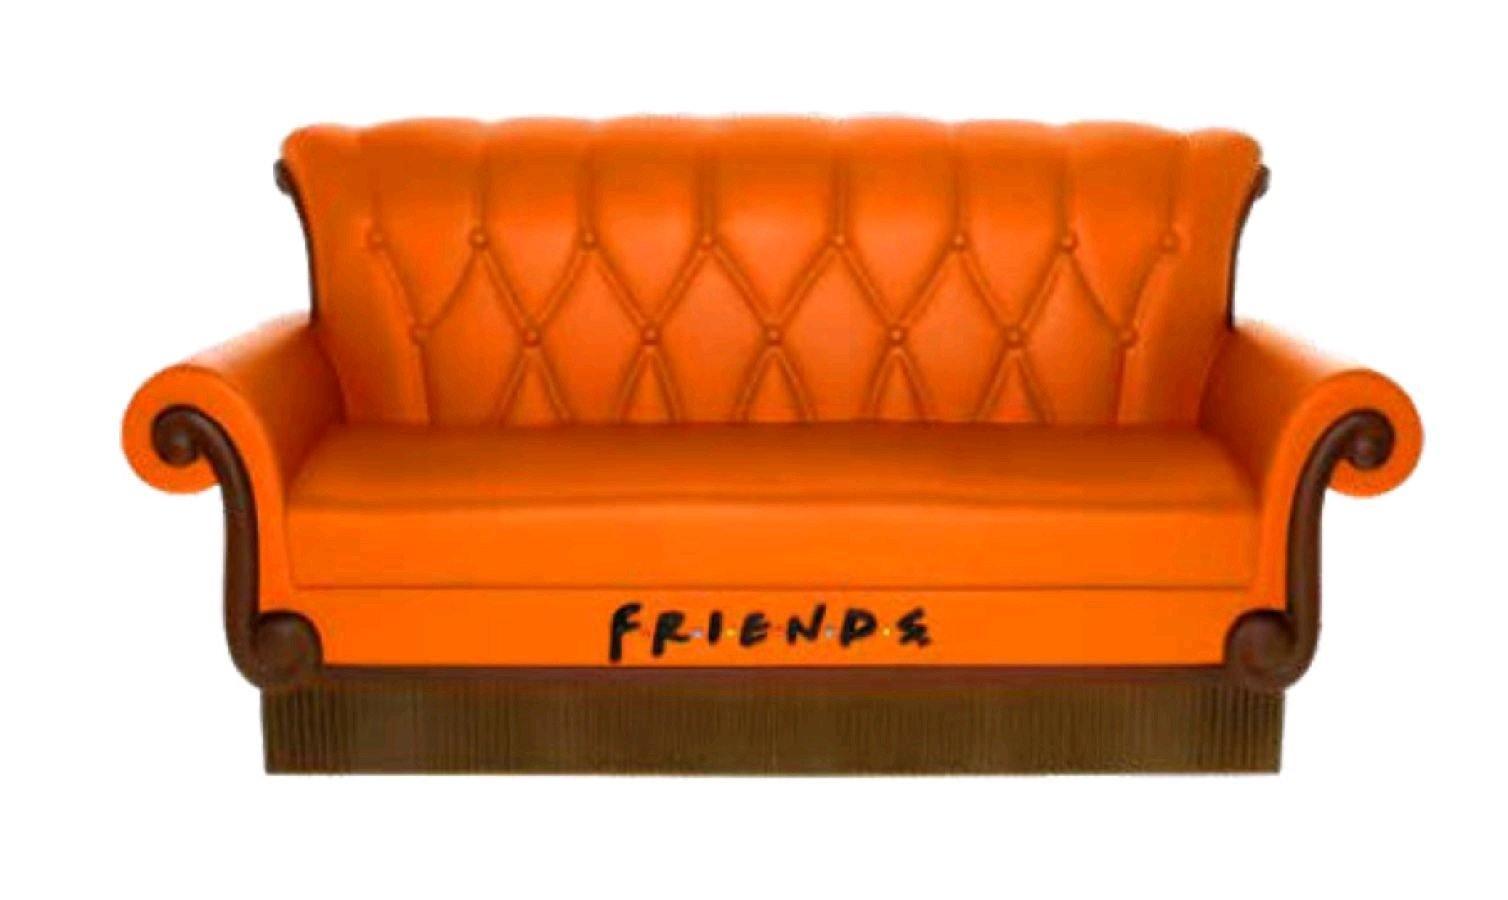 MON47241 Friends - Couch PVC Bank - Monogram International - Titan Pop Culture